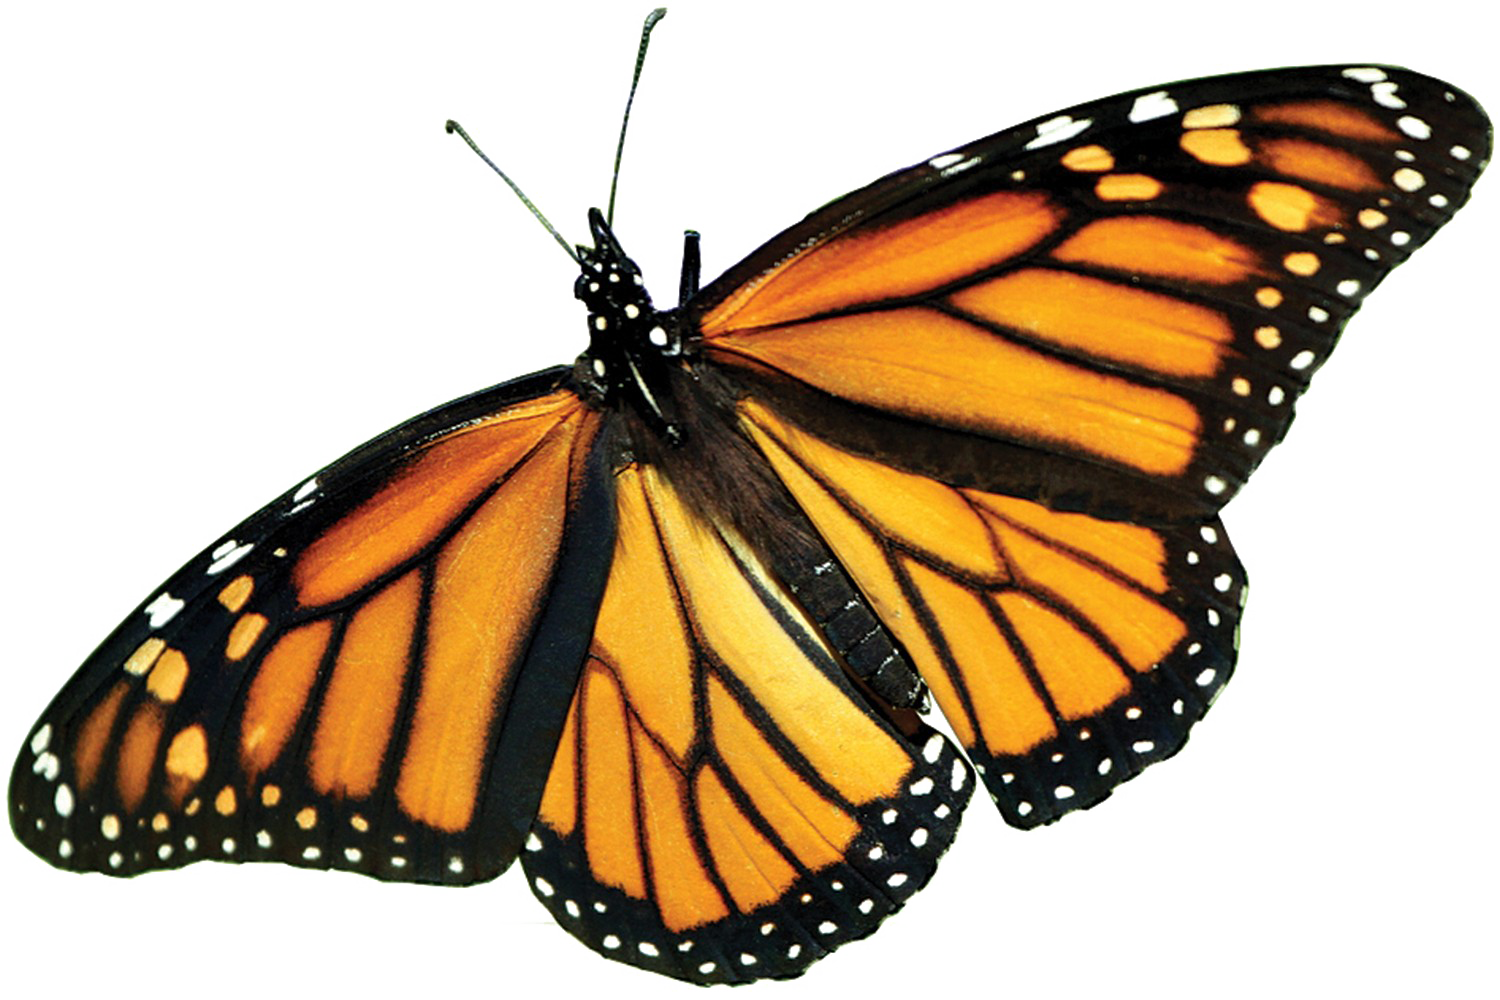 Immagine del PNG della farfalla monarca